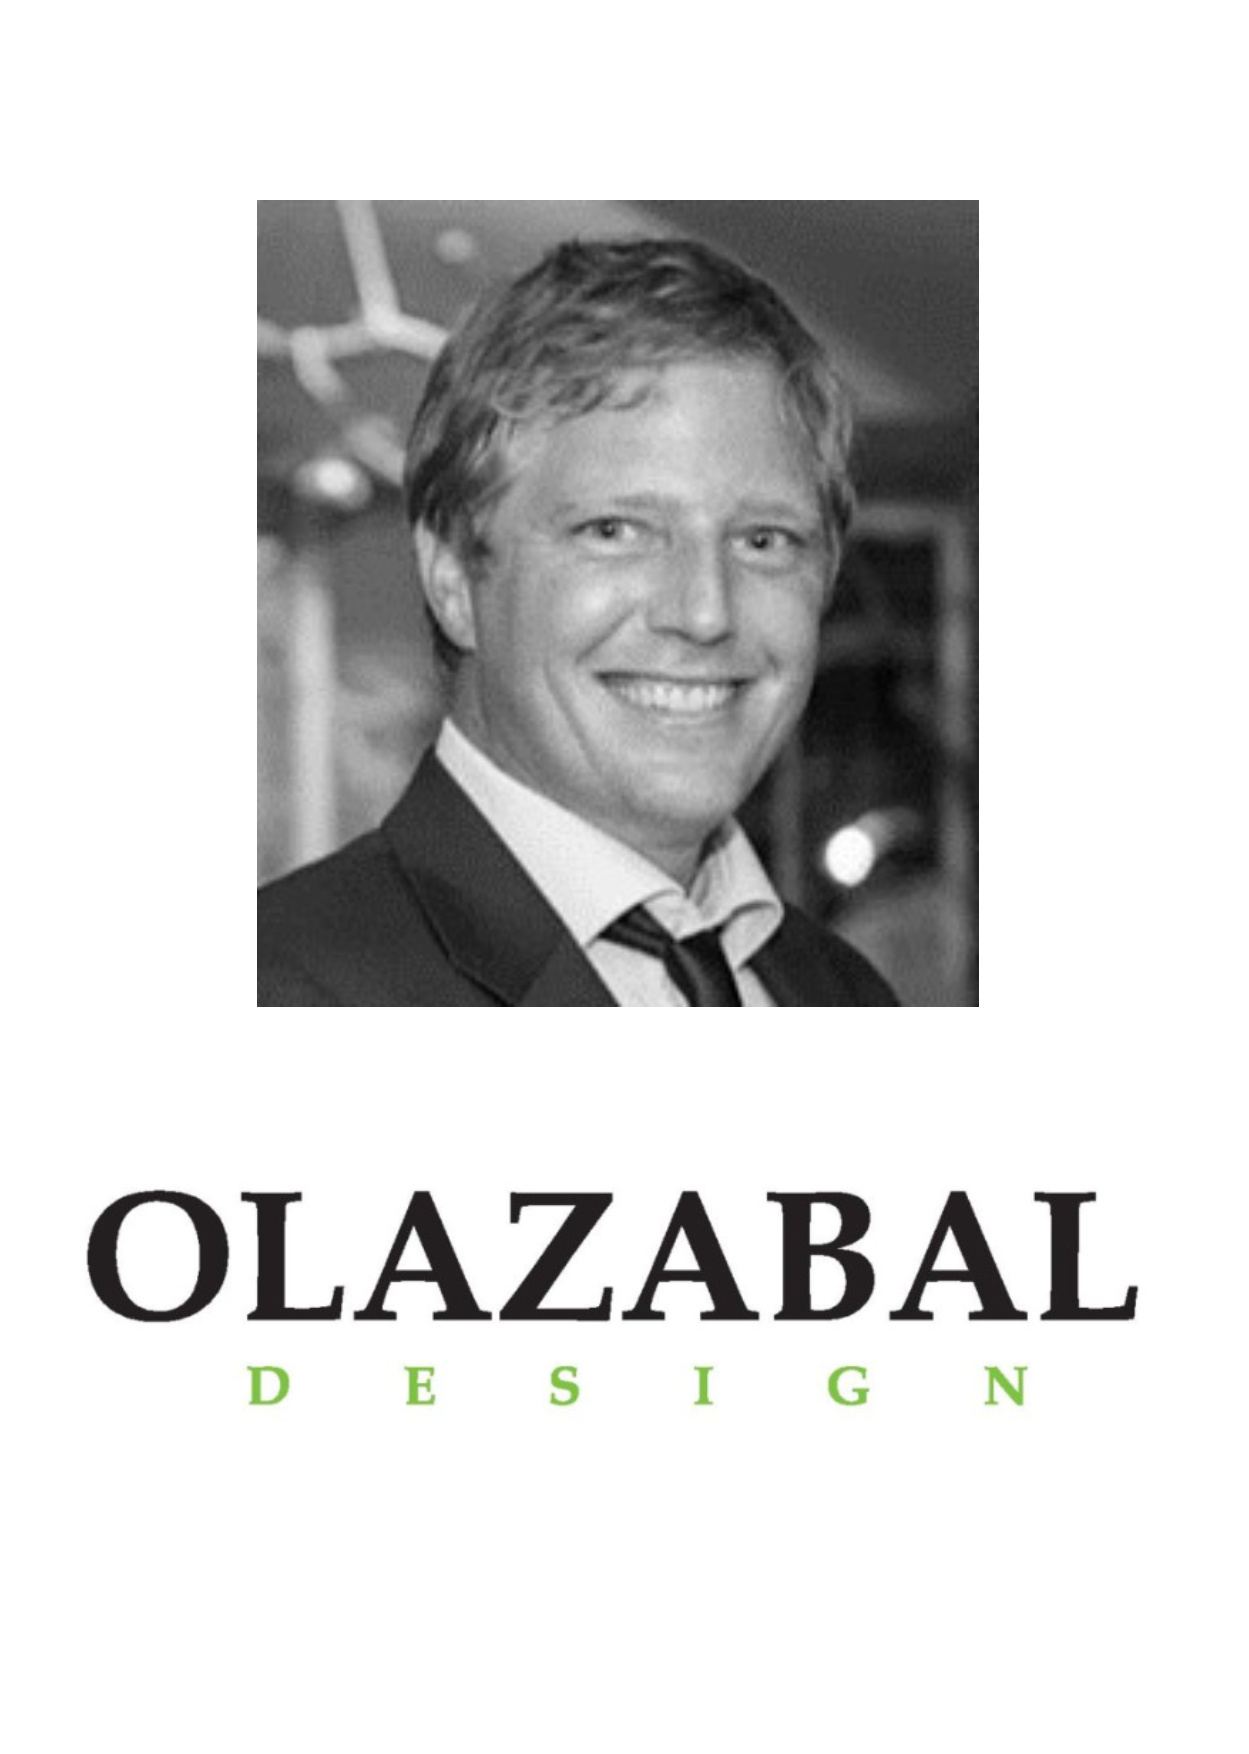 Porträt von Toni Ortner von Olazabal Desigh und Schriftzug von Olazabal Design